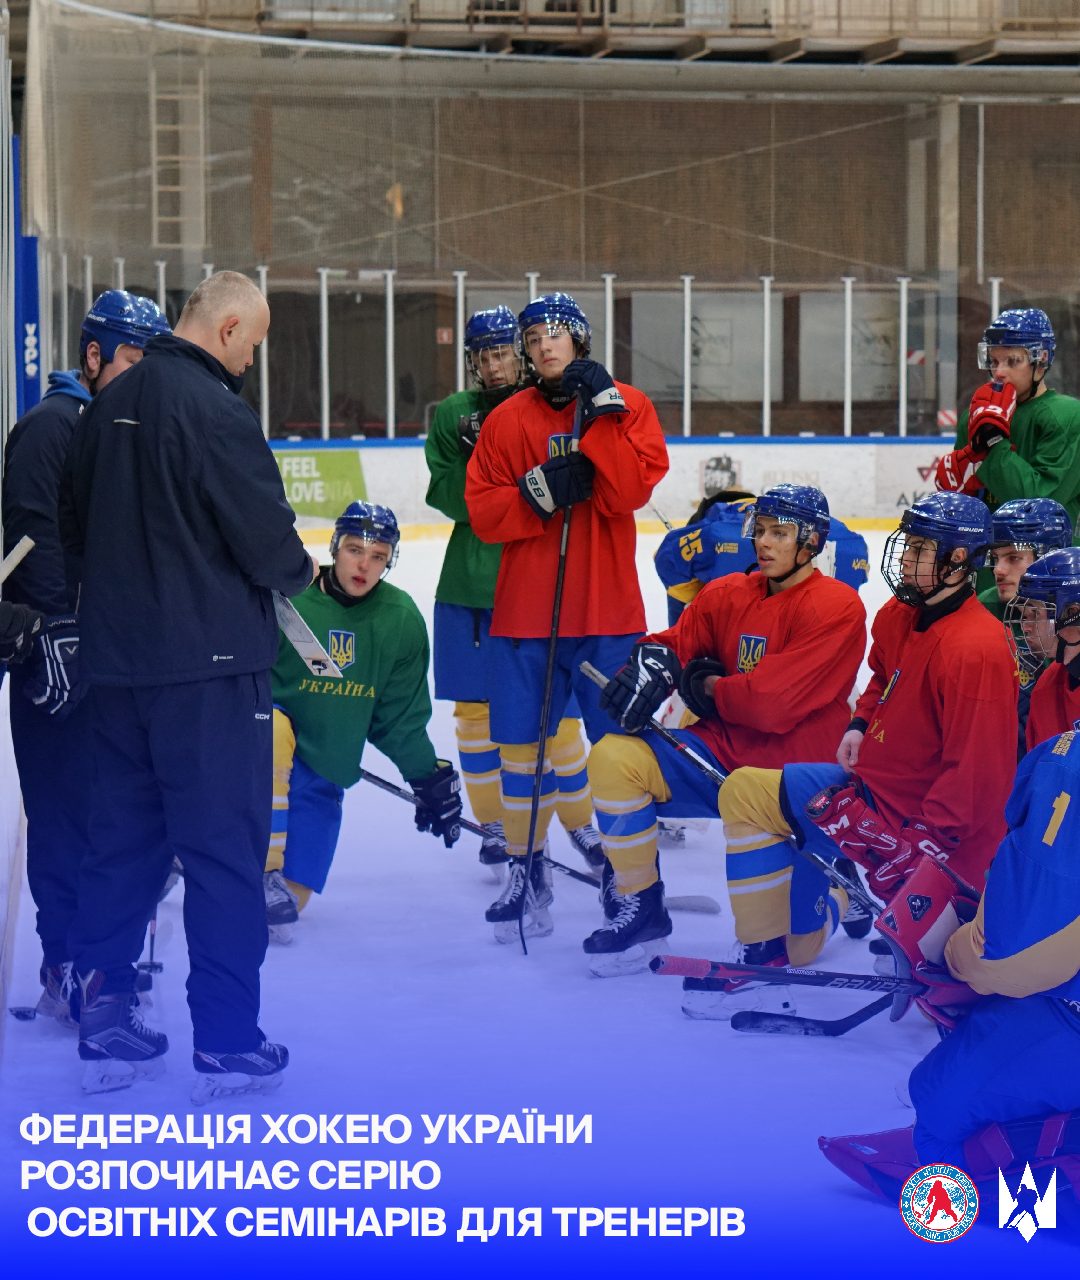 Розпочинаємо серію освітніх семінарів для українських тренерів